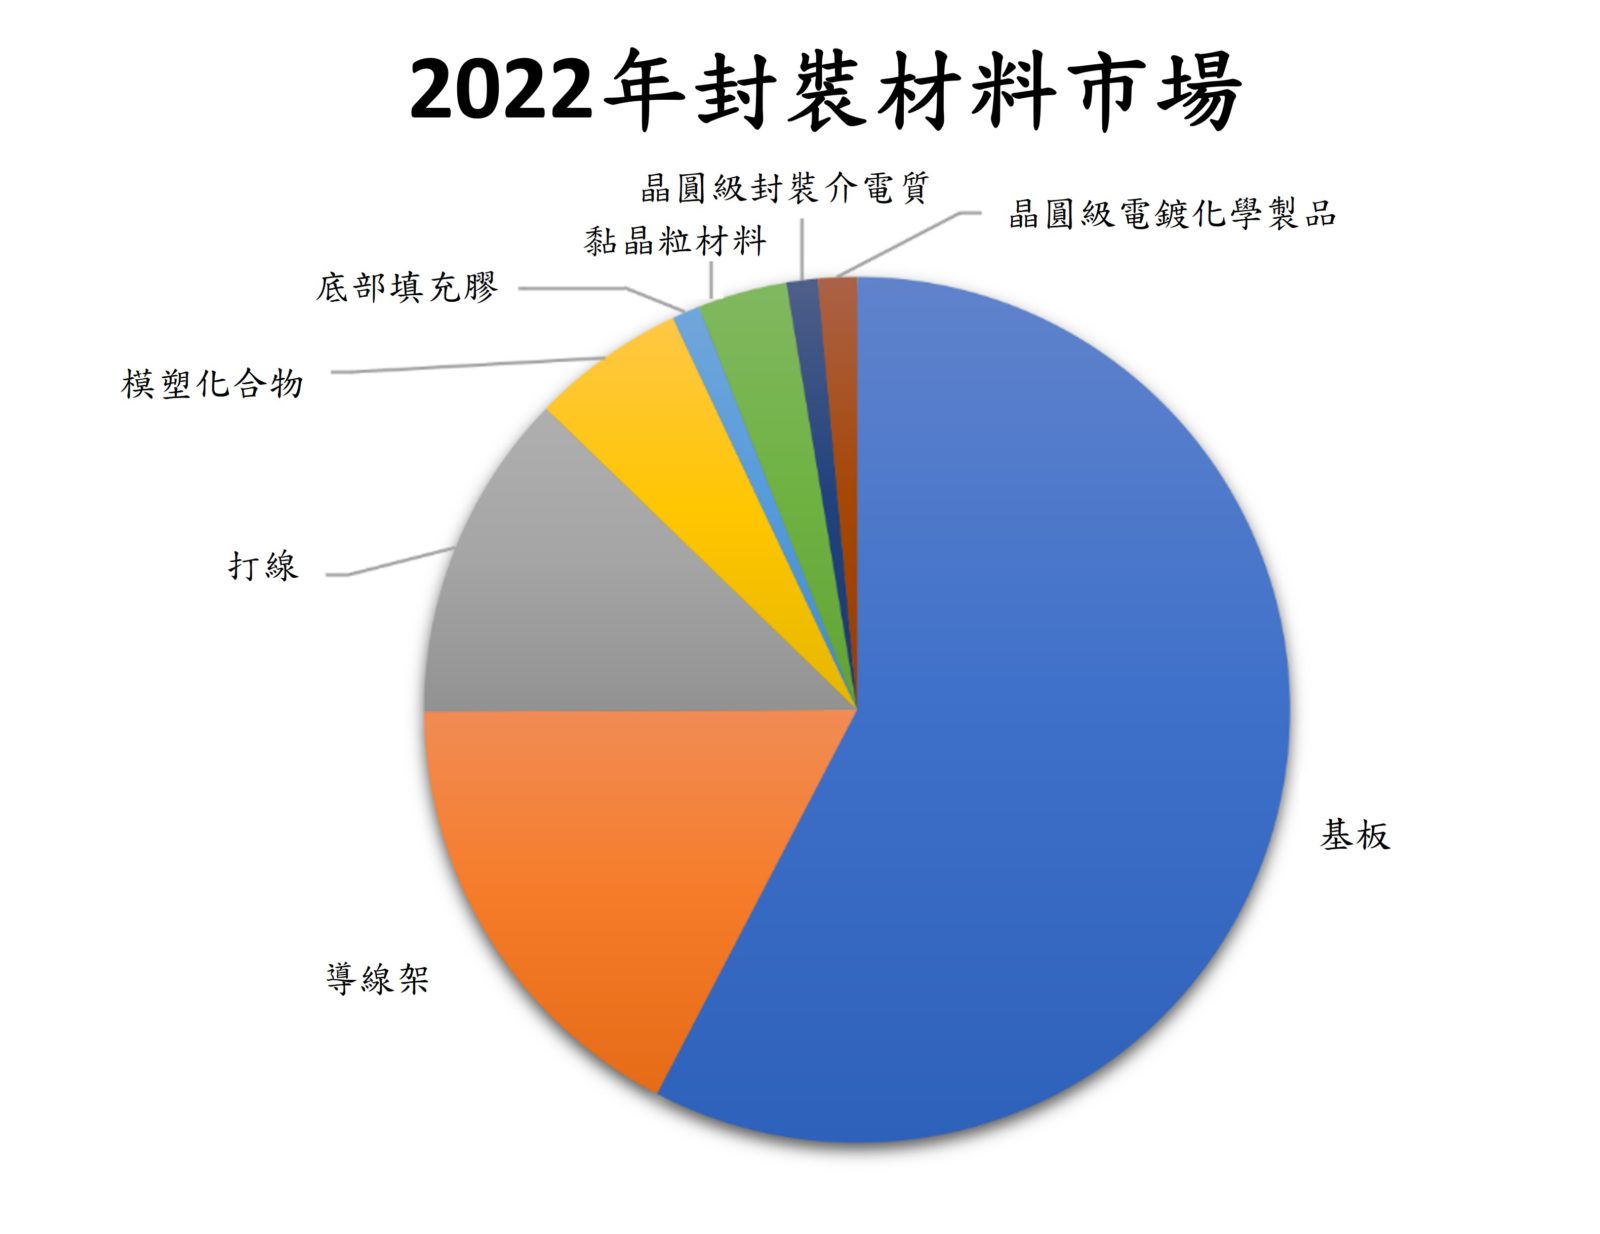 SEMI：全球半导体封装材料市场持续成长，2027年将达298亿美元